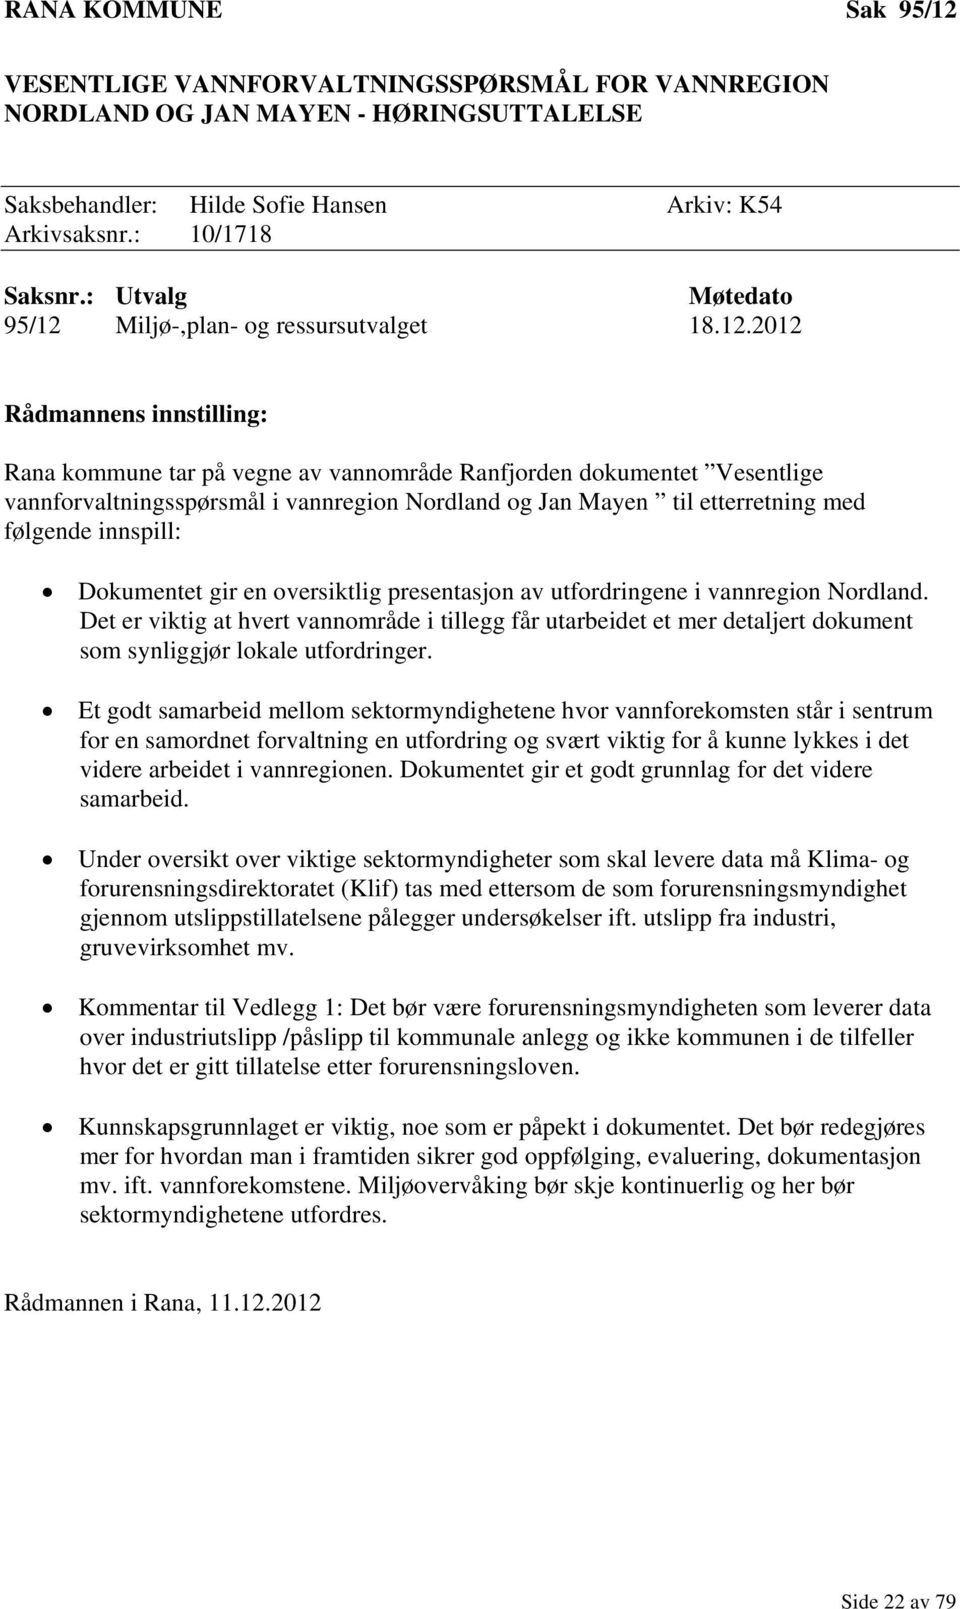 Miljø-,plan- og ressursutvalget 18.12.